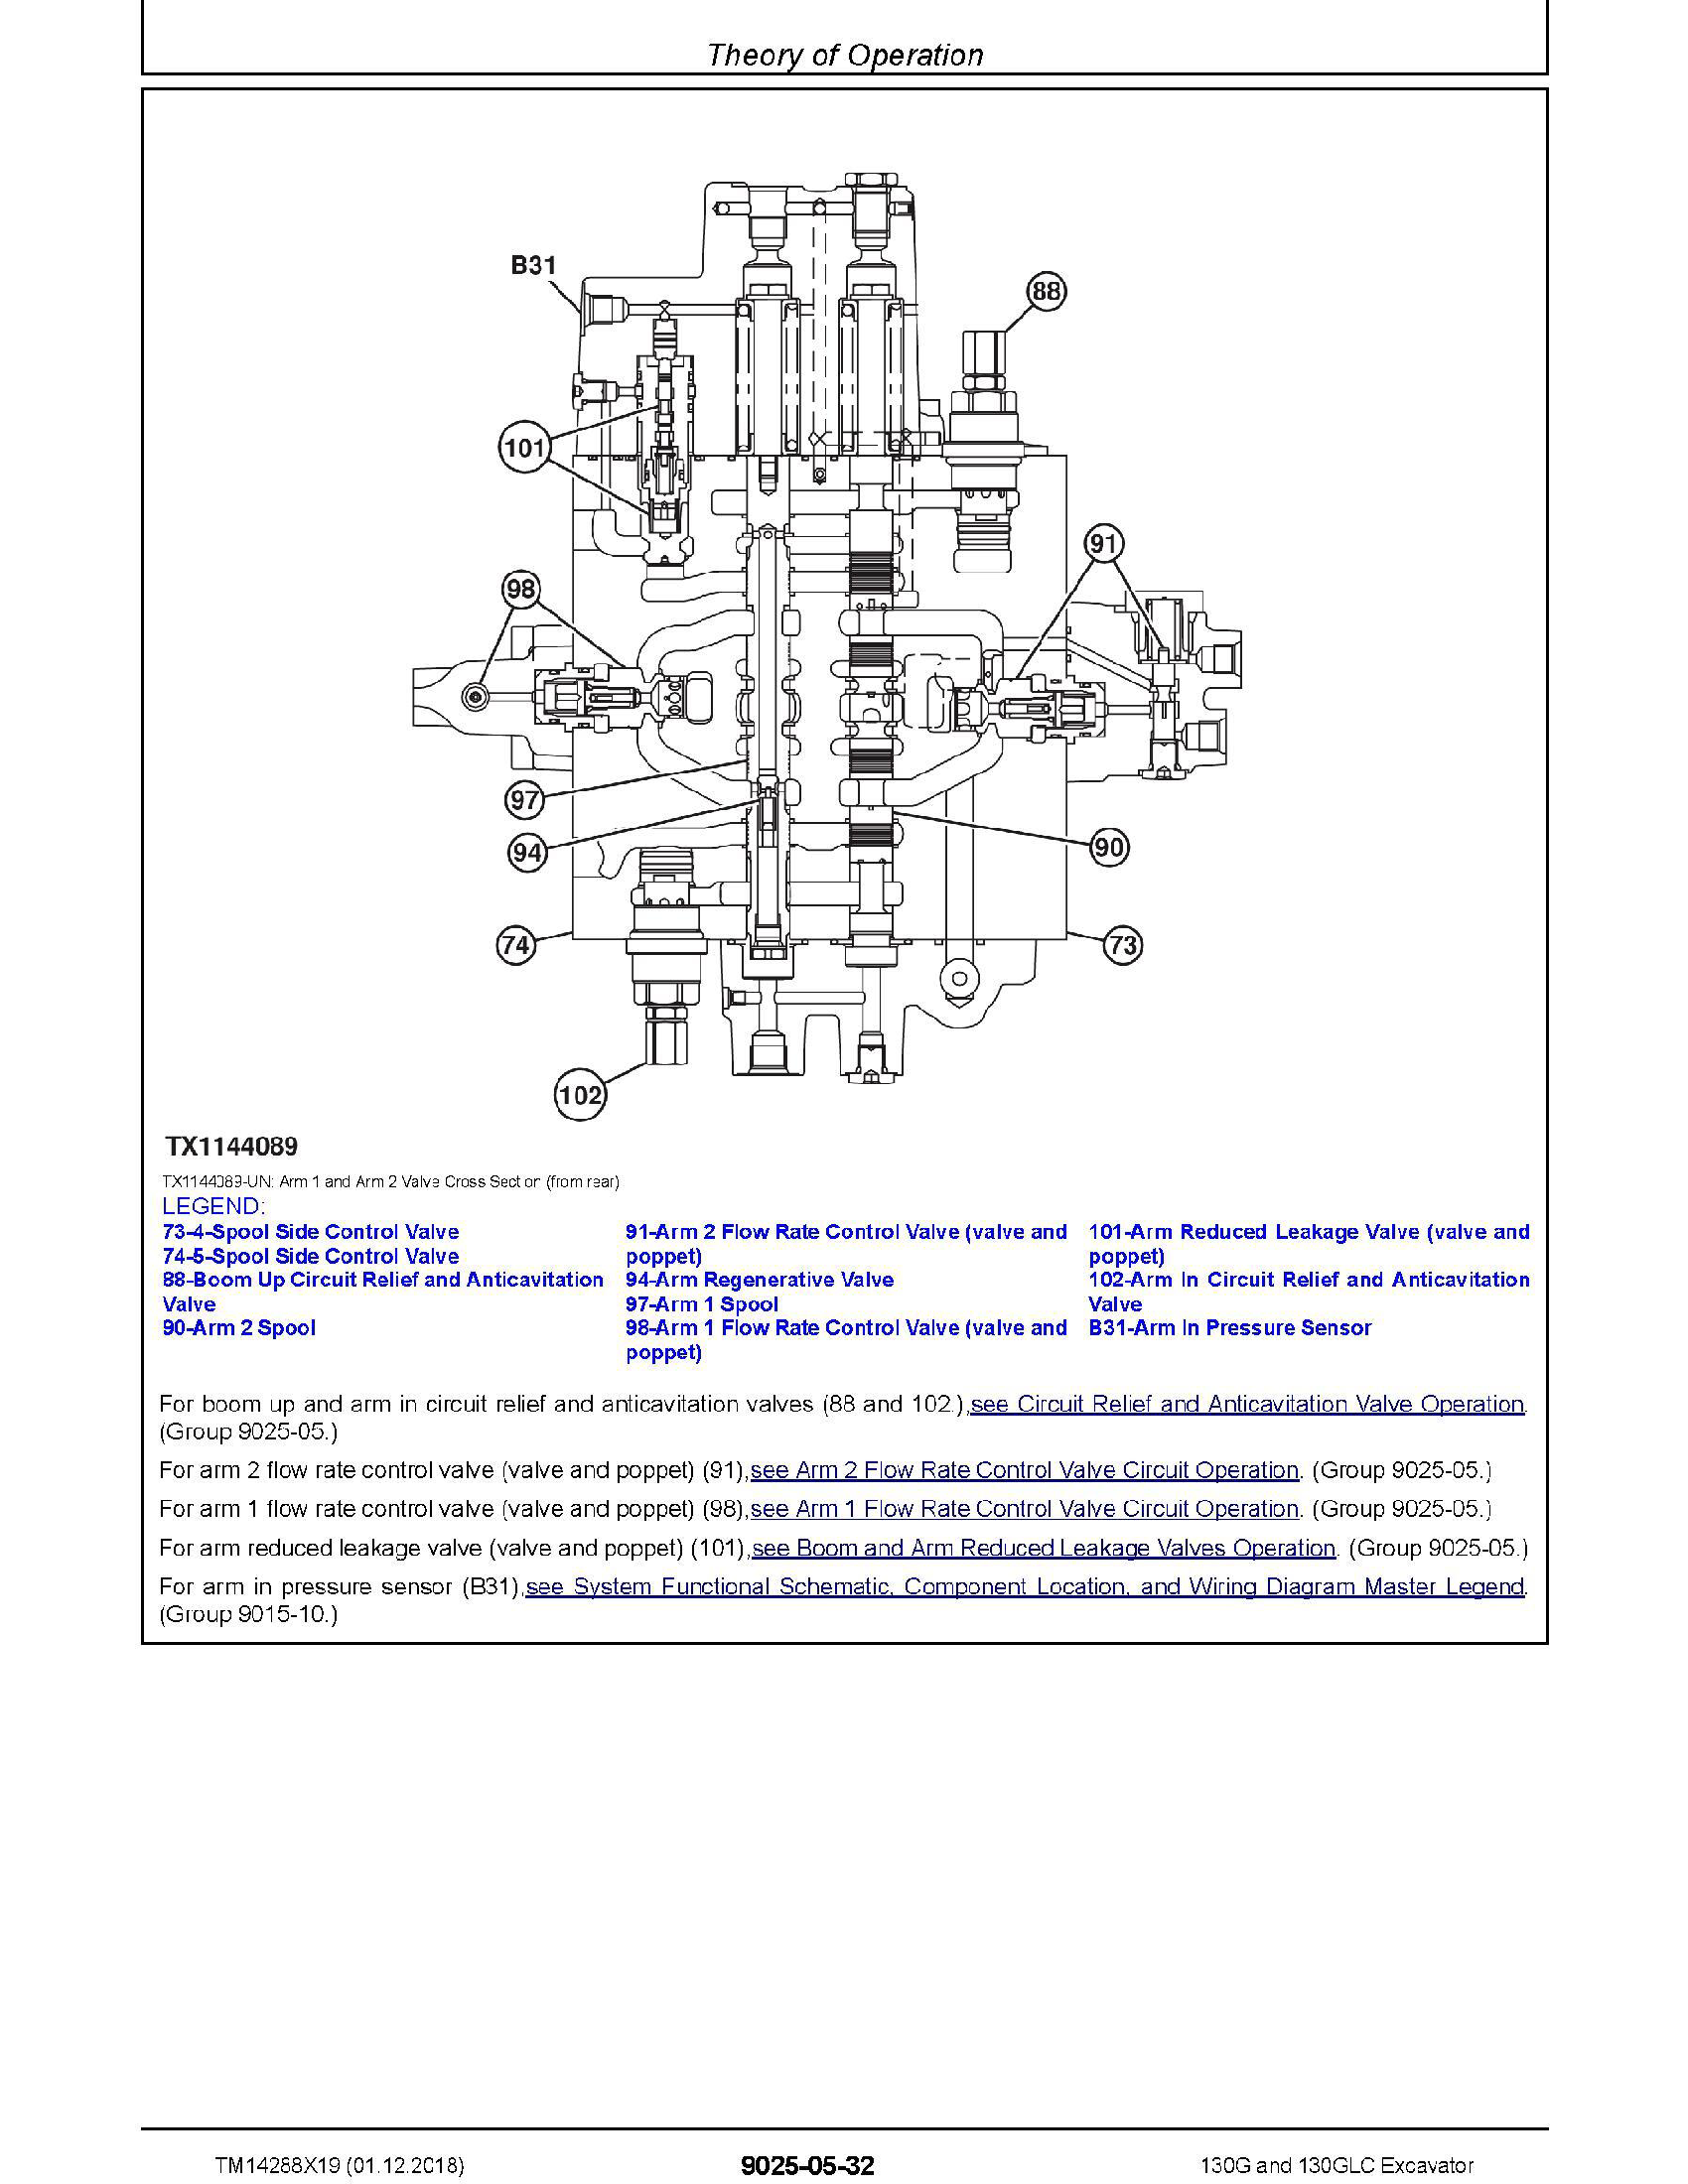 John Deere 950C manual pdf